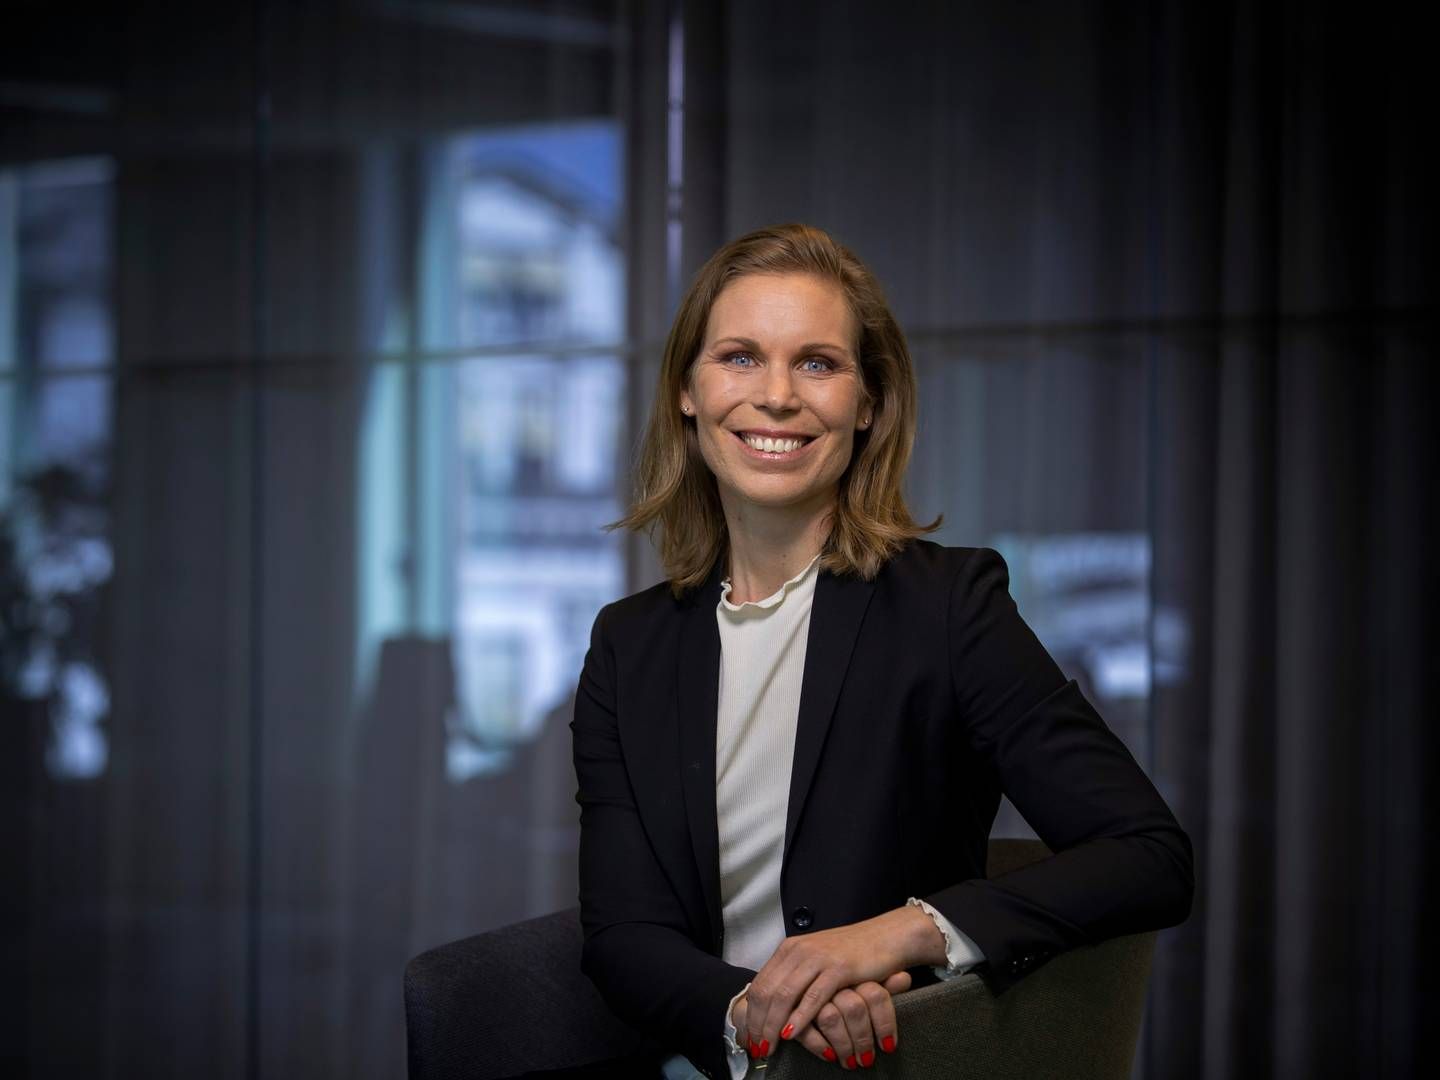 Anna Jönsson er utnevnt til adm. dir. i Storebrand AMs svenske virksomhet. | Foto: Storebrand/PR